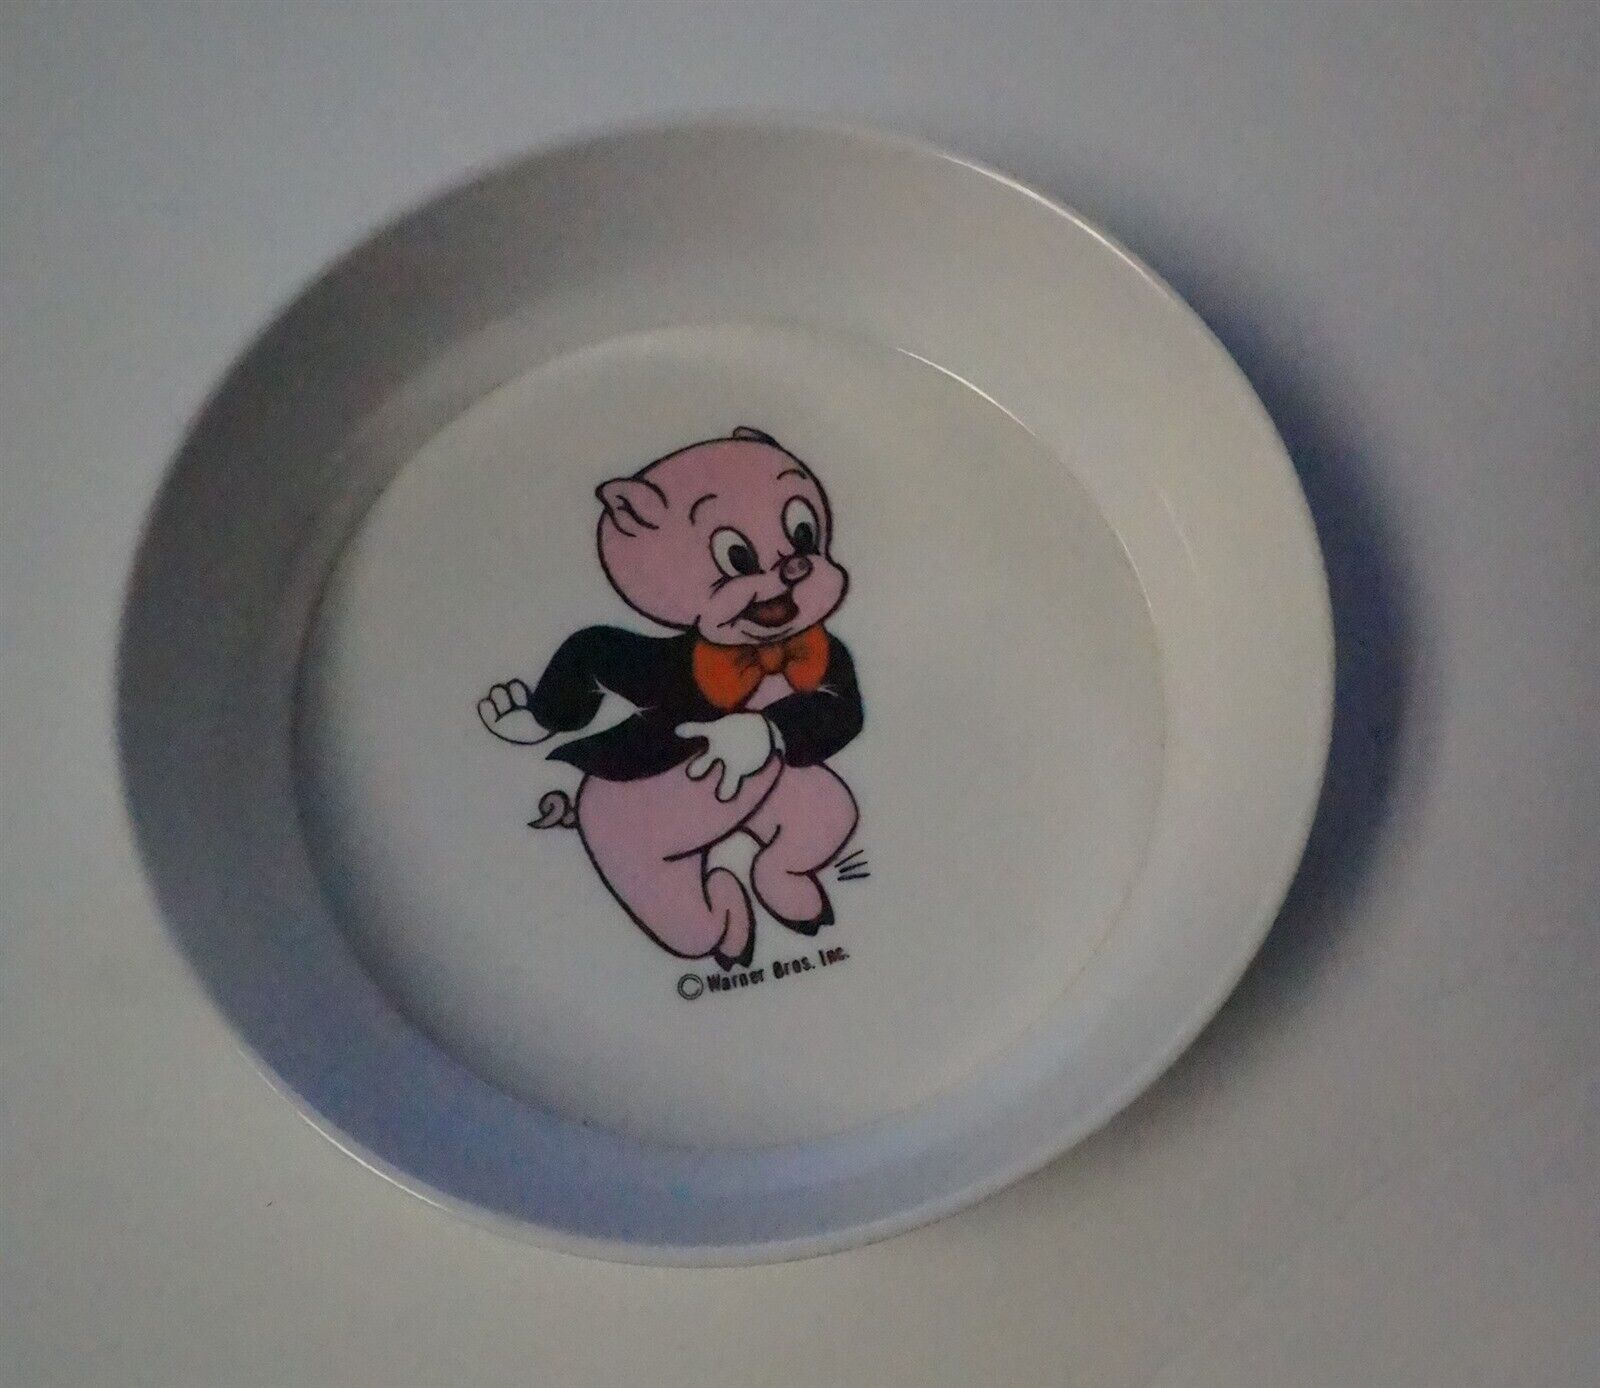 Porky Pig Warner Bros Vintage Cereal Bowl 